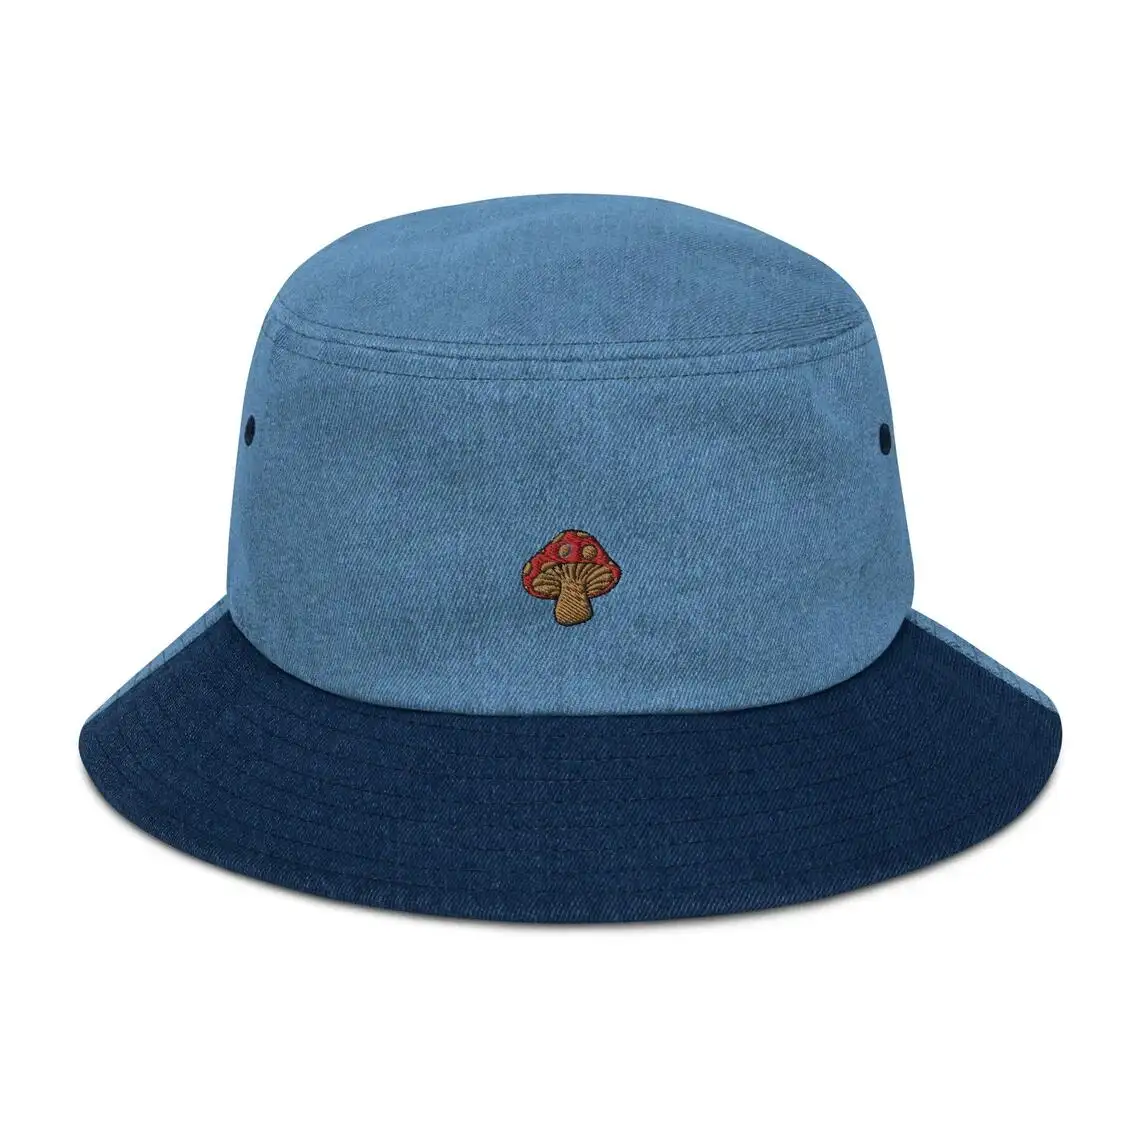 Chapéu tipo bucket hat, chapéu da moda, desenhado à mão, cogumelo, bucket hat, verão, respirável, confortável, de alta qualidade, personalizado, injae vina